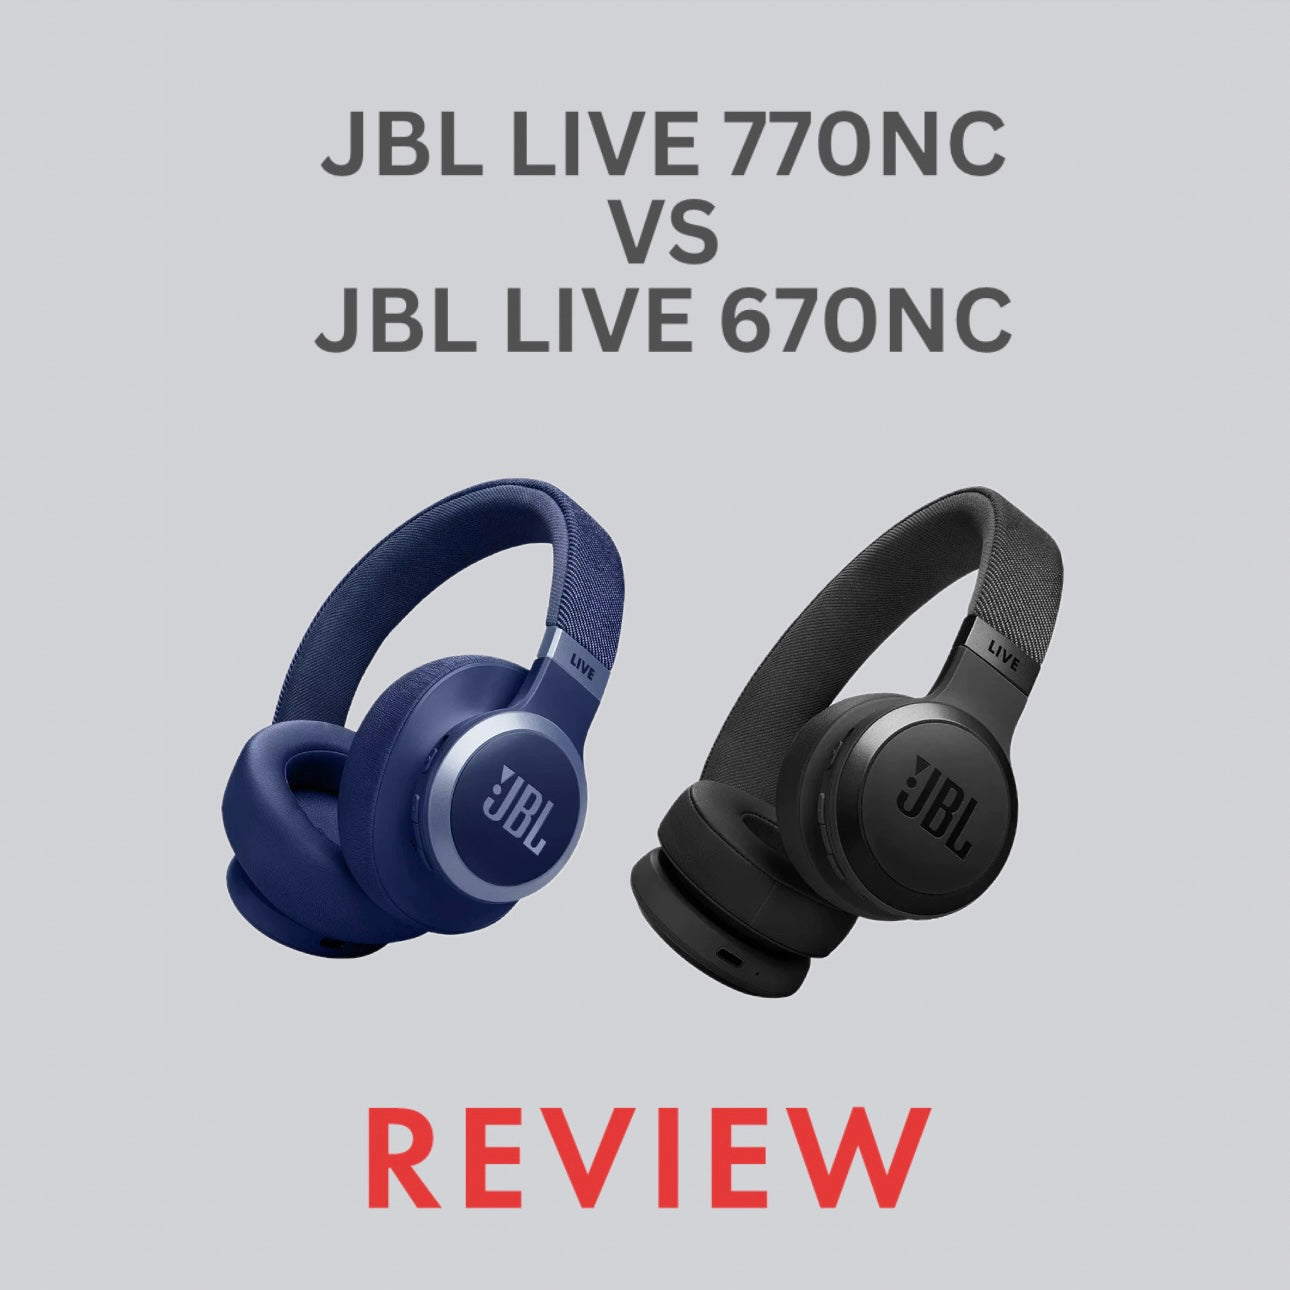 JBL LIVE 770NC VS JBL LIVE 670NC Review